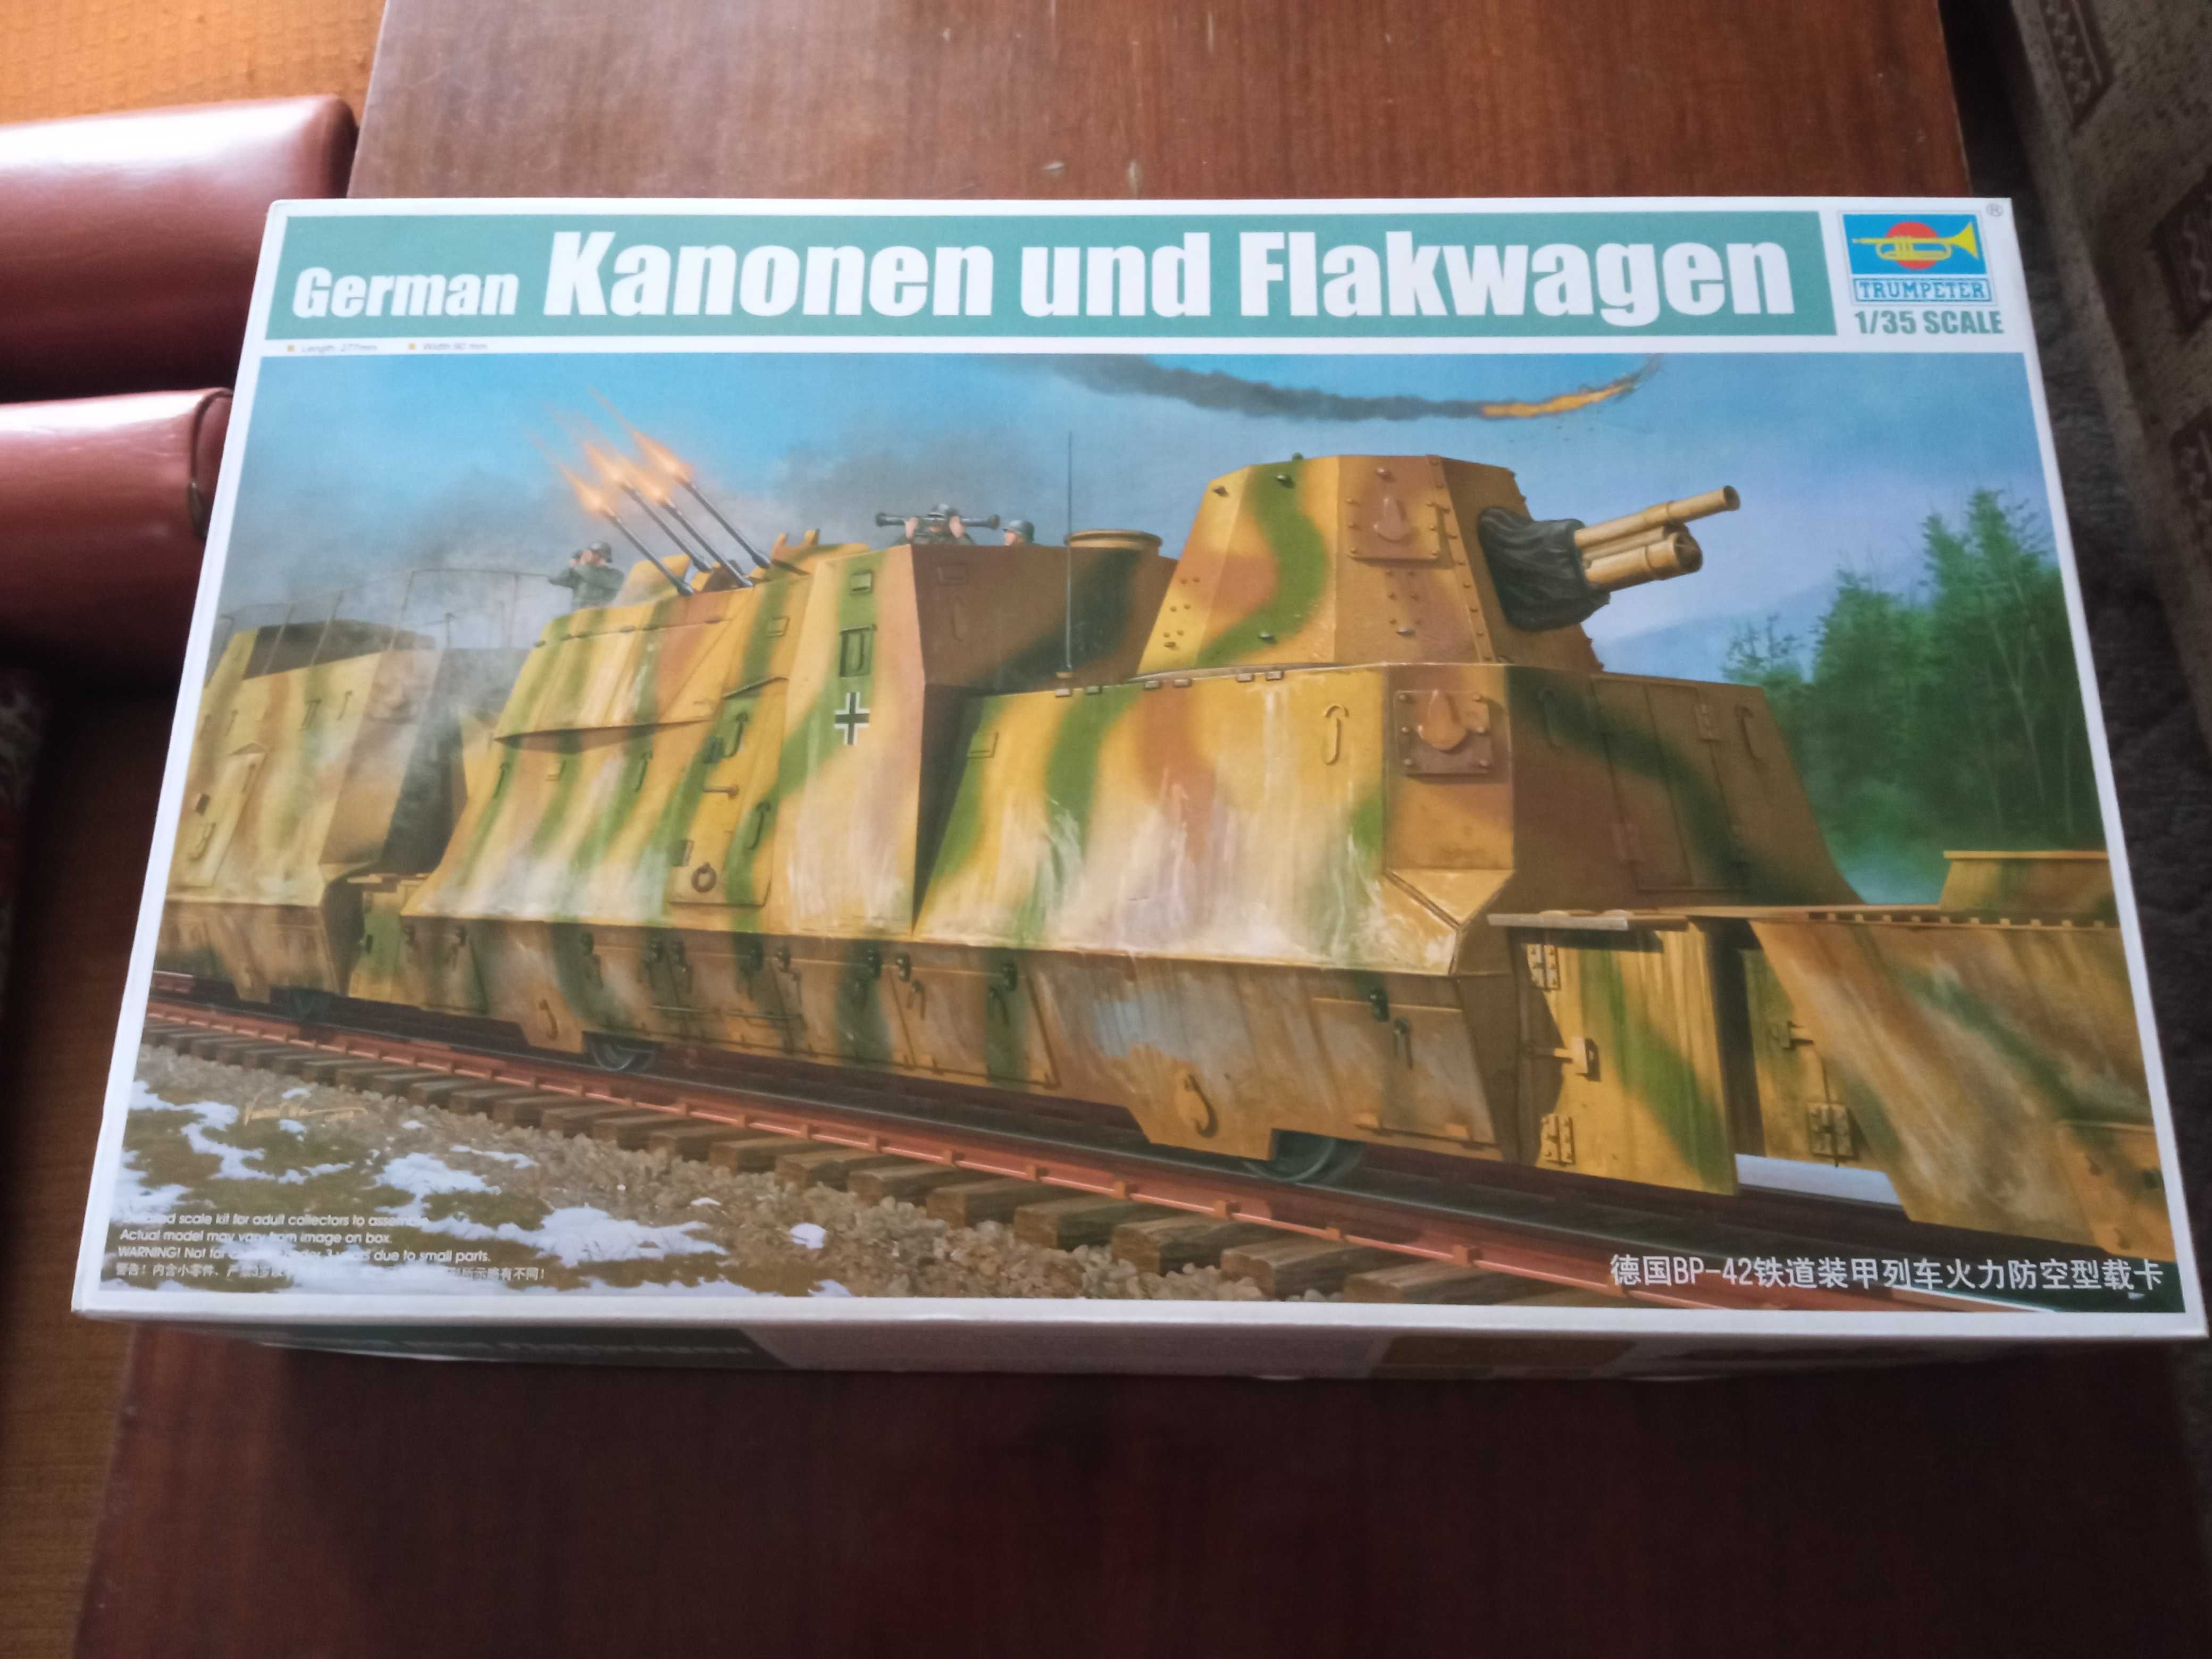 German Kanonen und Flakwagen - Trumpeter 01511 (skala 1:35)